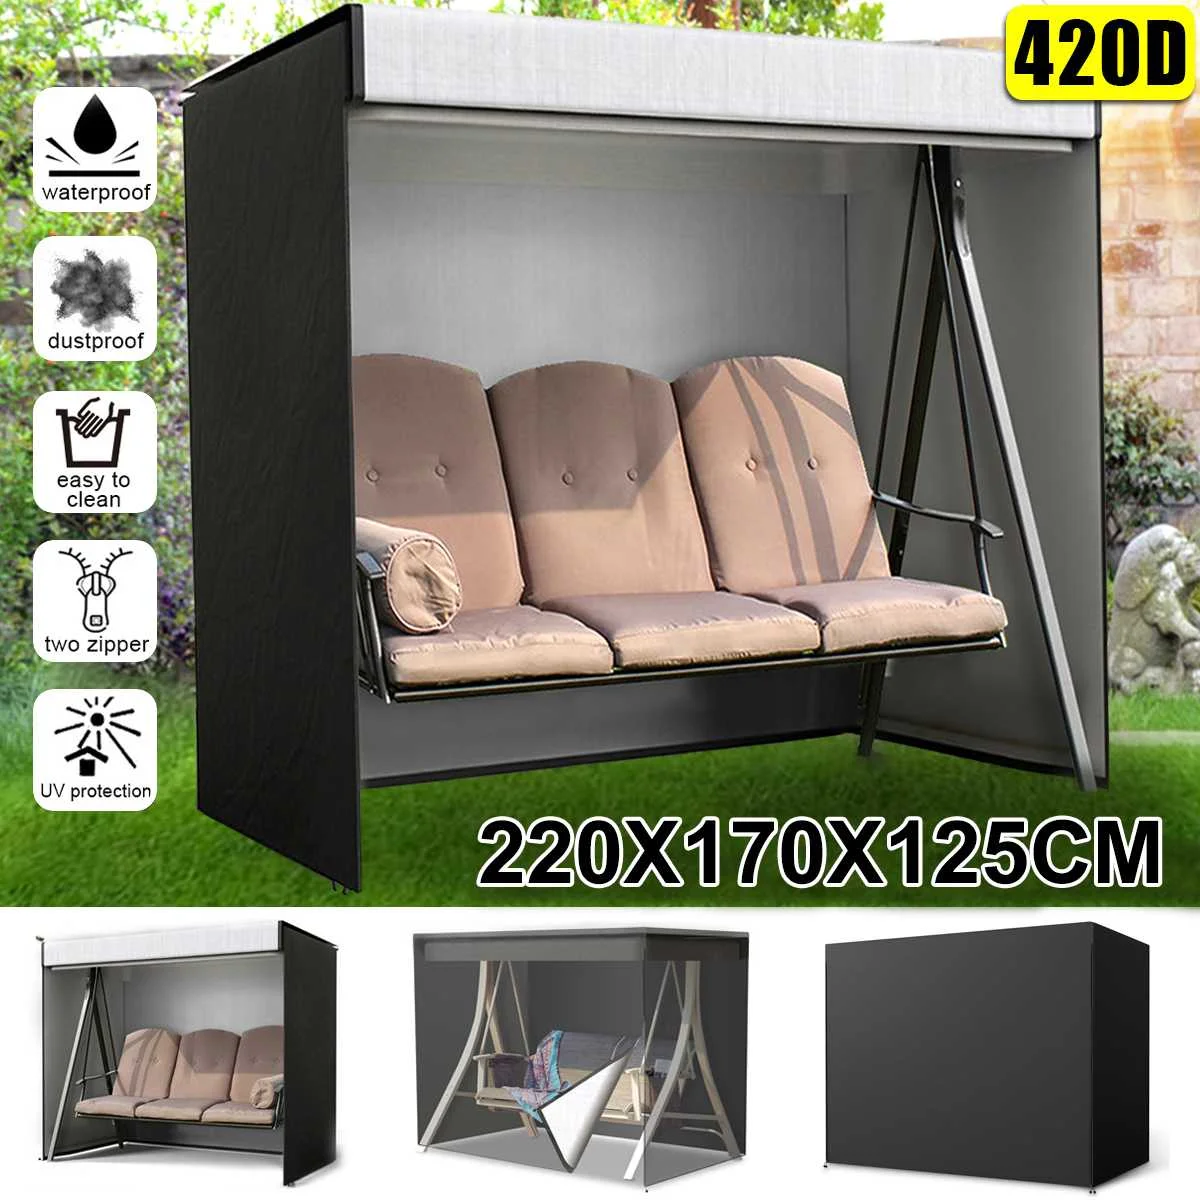 Garden Chair Sofa Cover Waterproof Dustproof Furniture Protector Patio Outdoor 